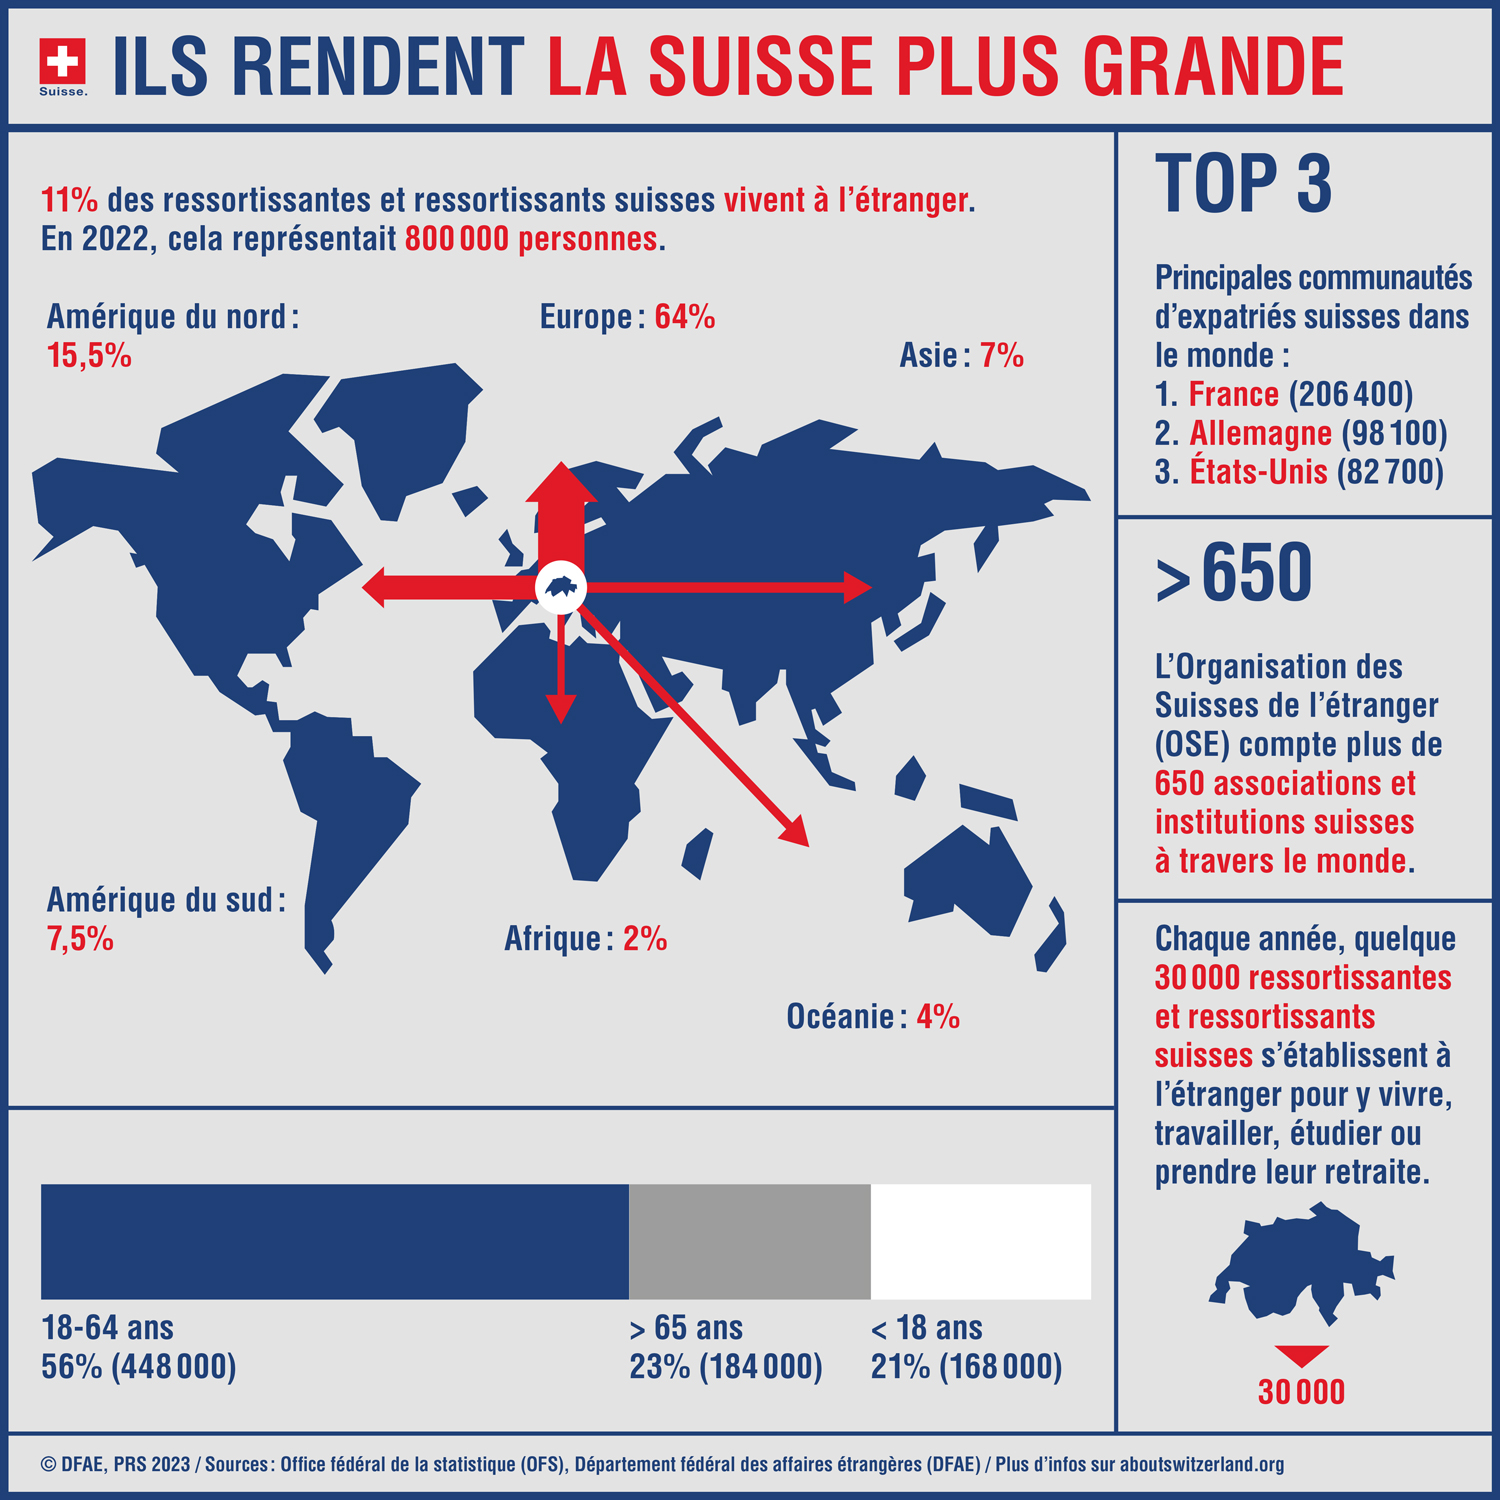 L’infographie présente des faits et des chiffres sur les Suisses et Suissesses de l’étranger.